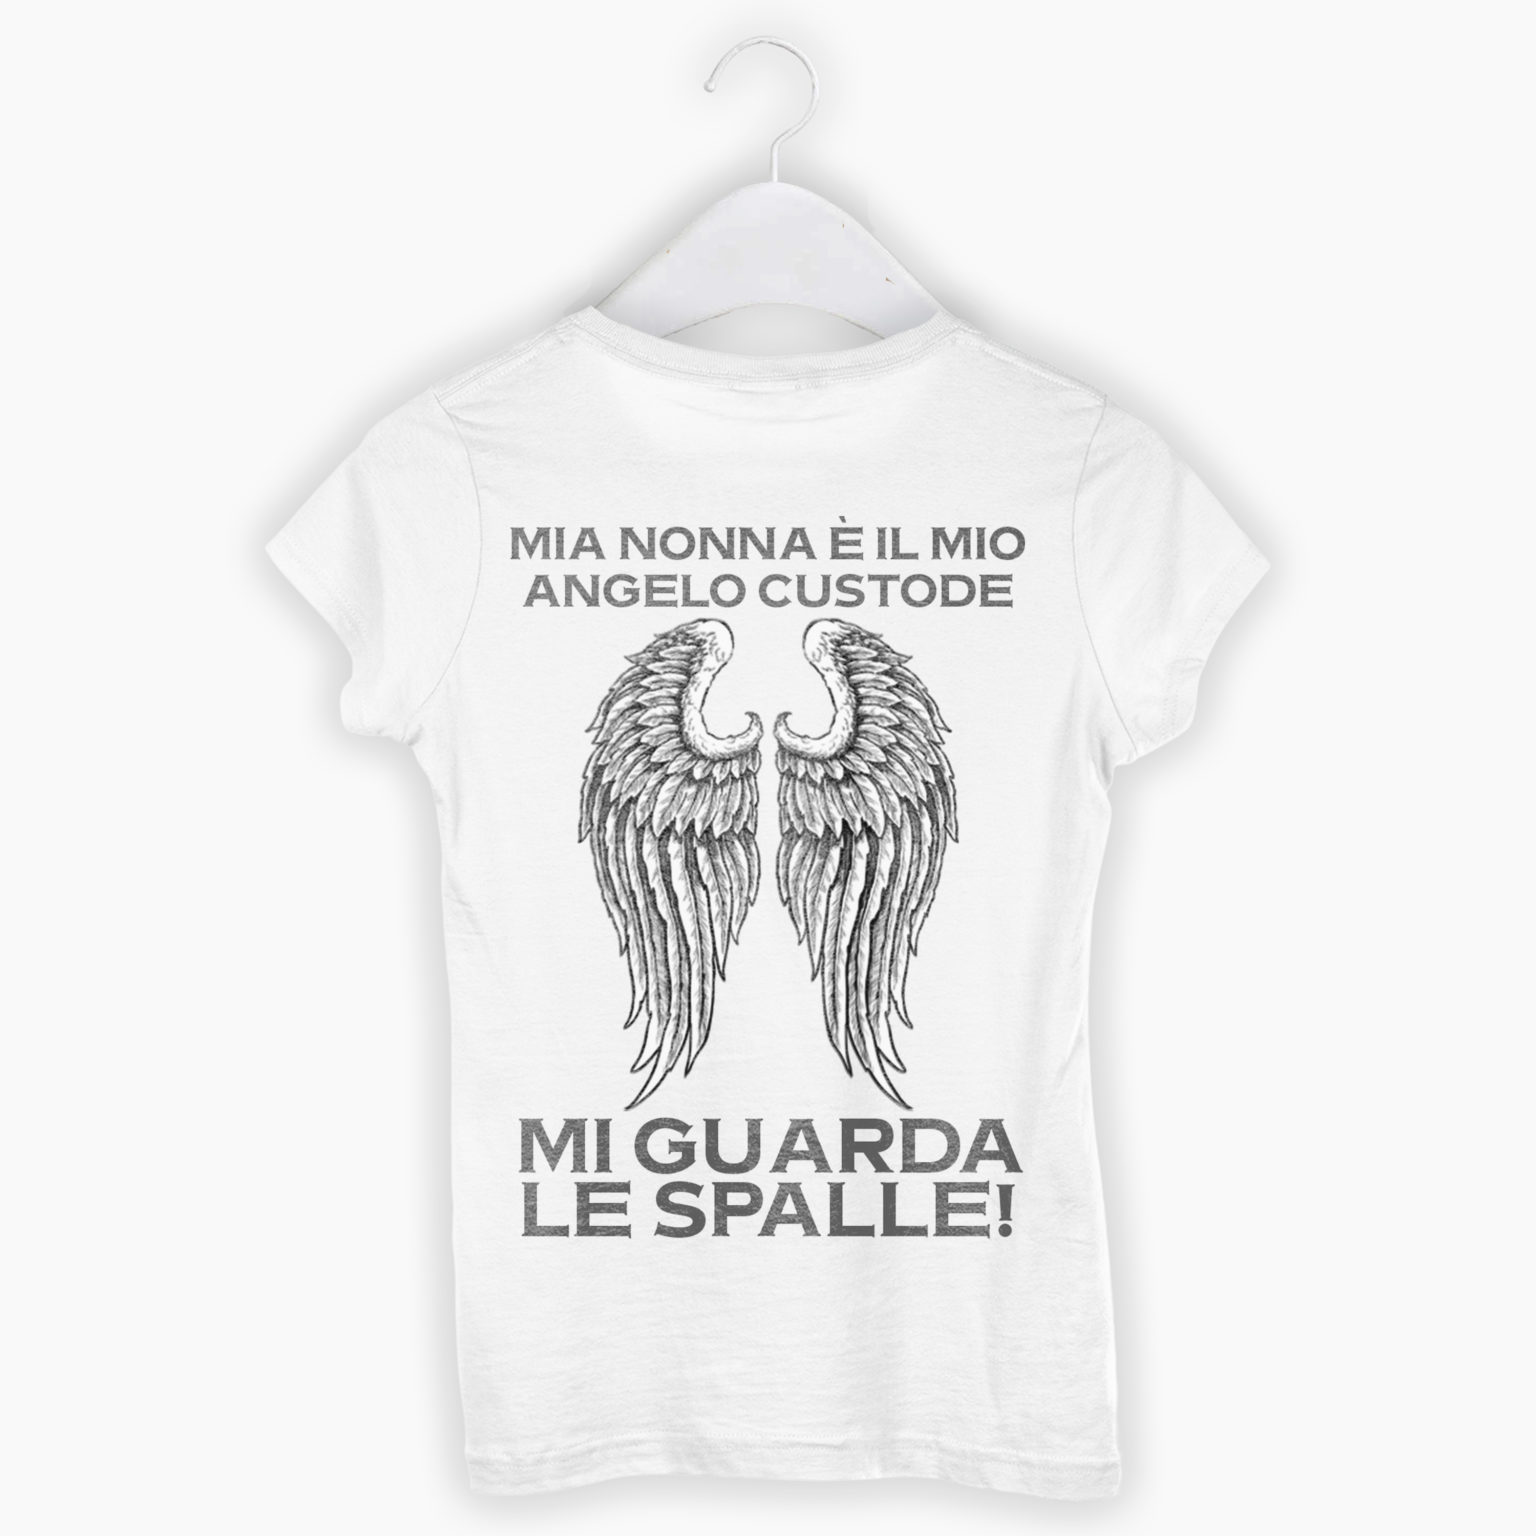 T-shirt Uomo/Donna – Mia Nonna E’ Il Mio Angelo Custode, Mi Guarda Le Spalle!